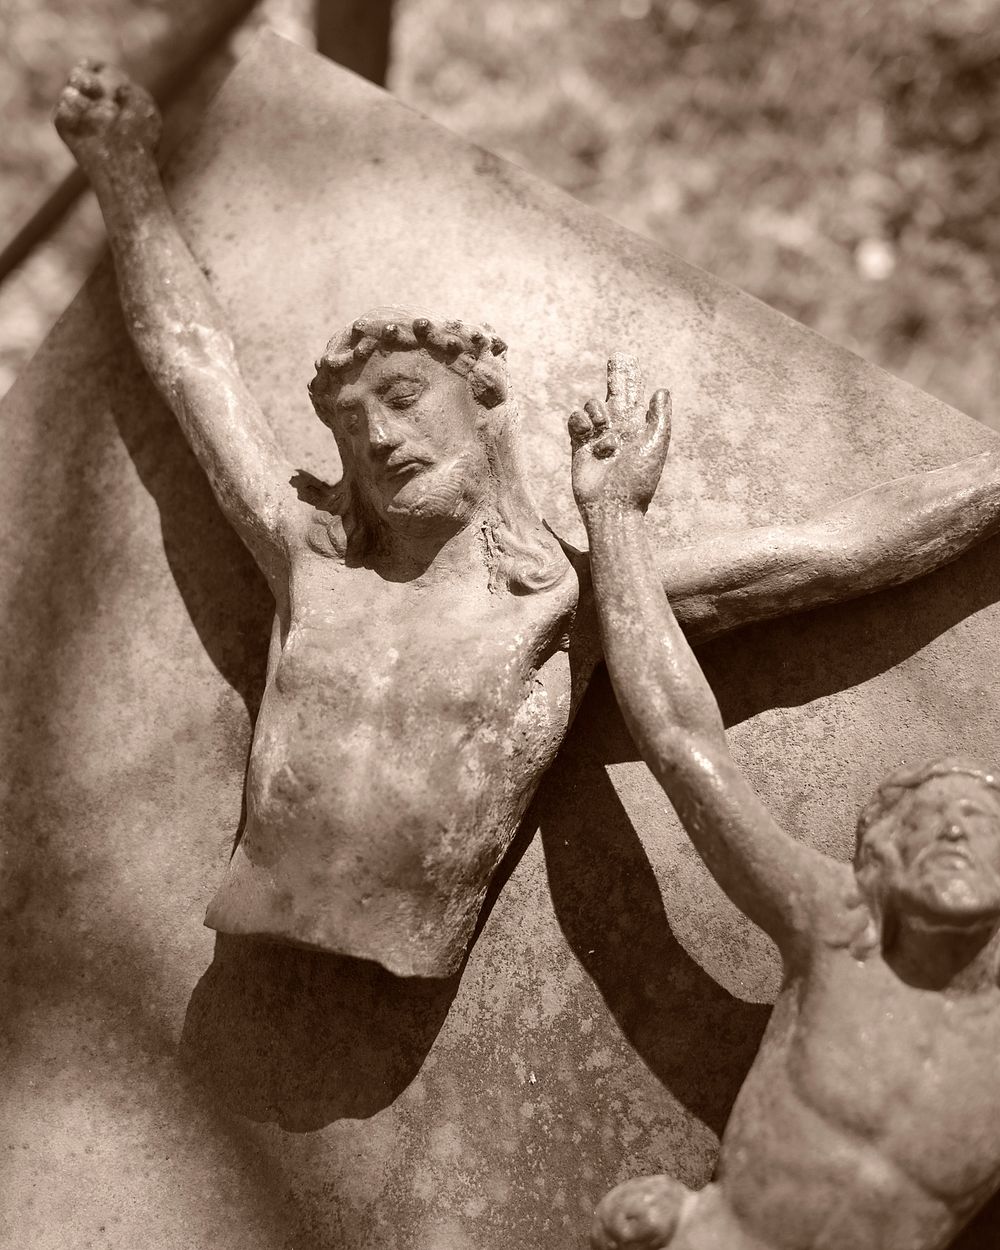 Sculpture of Jesus Christ. Free public domain CC0 image.